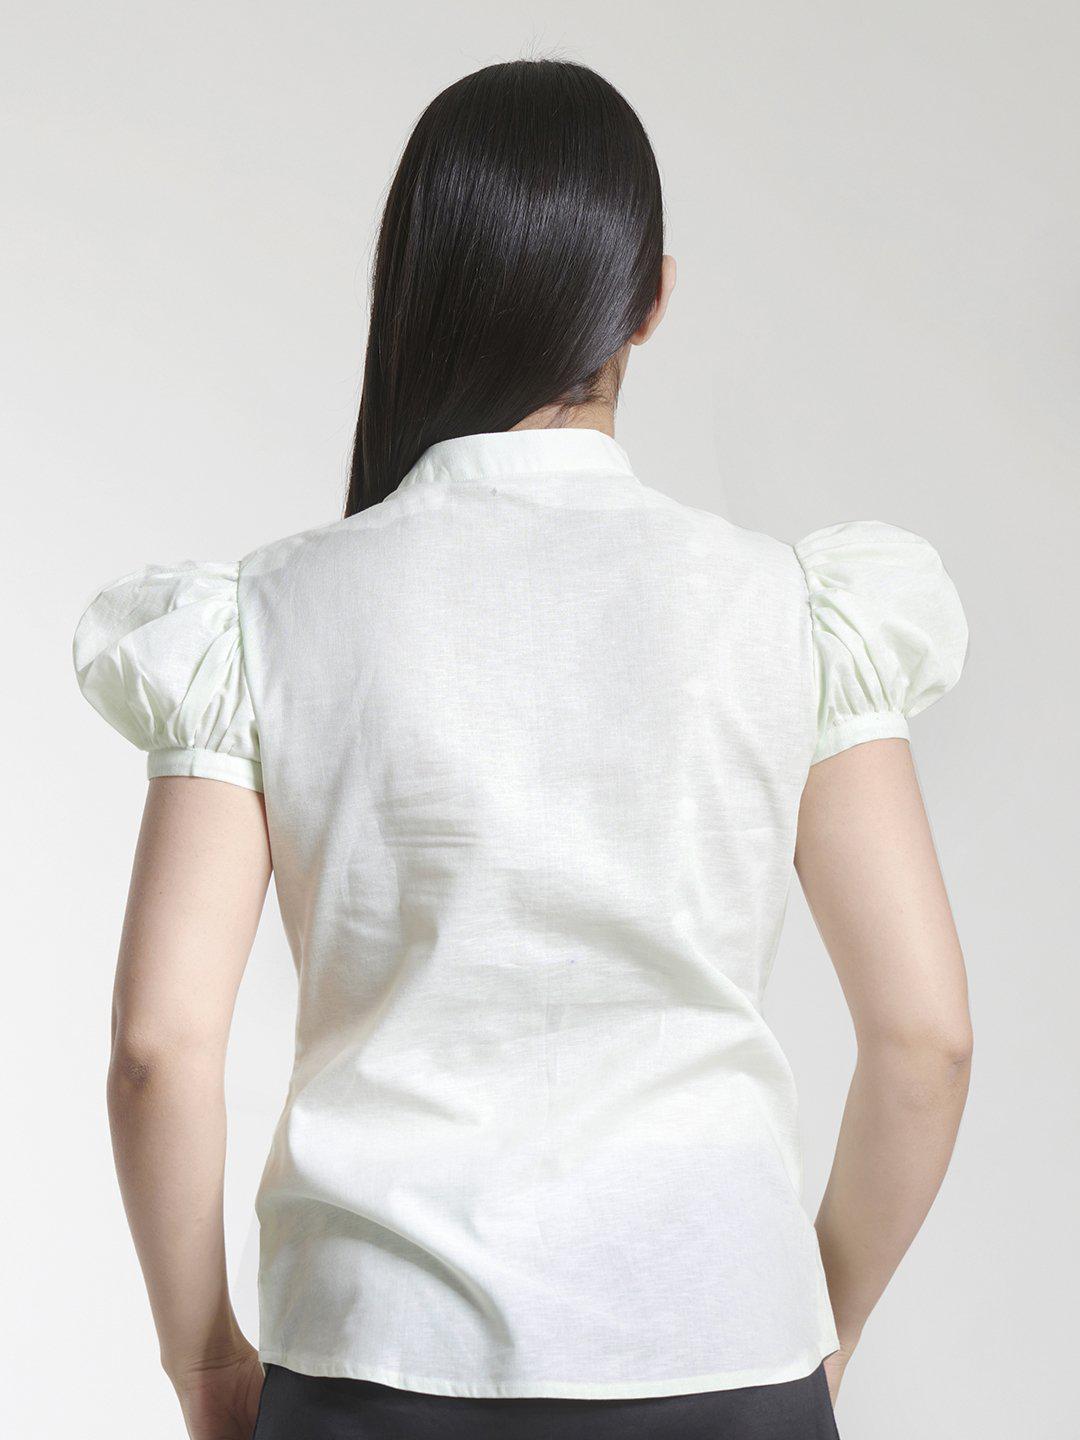 High Neck Cotton Linen Top For Women - Sea Green